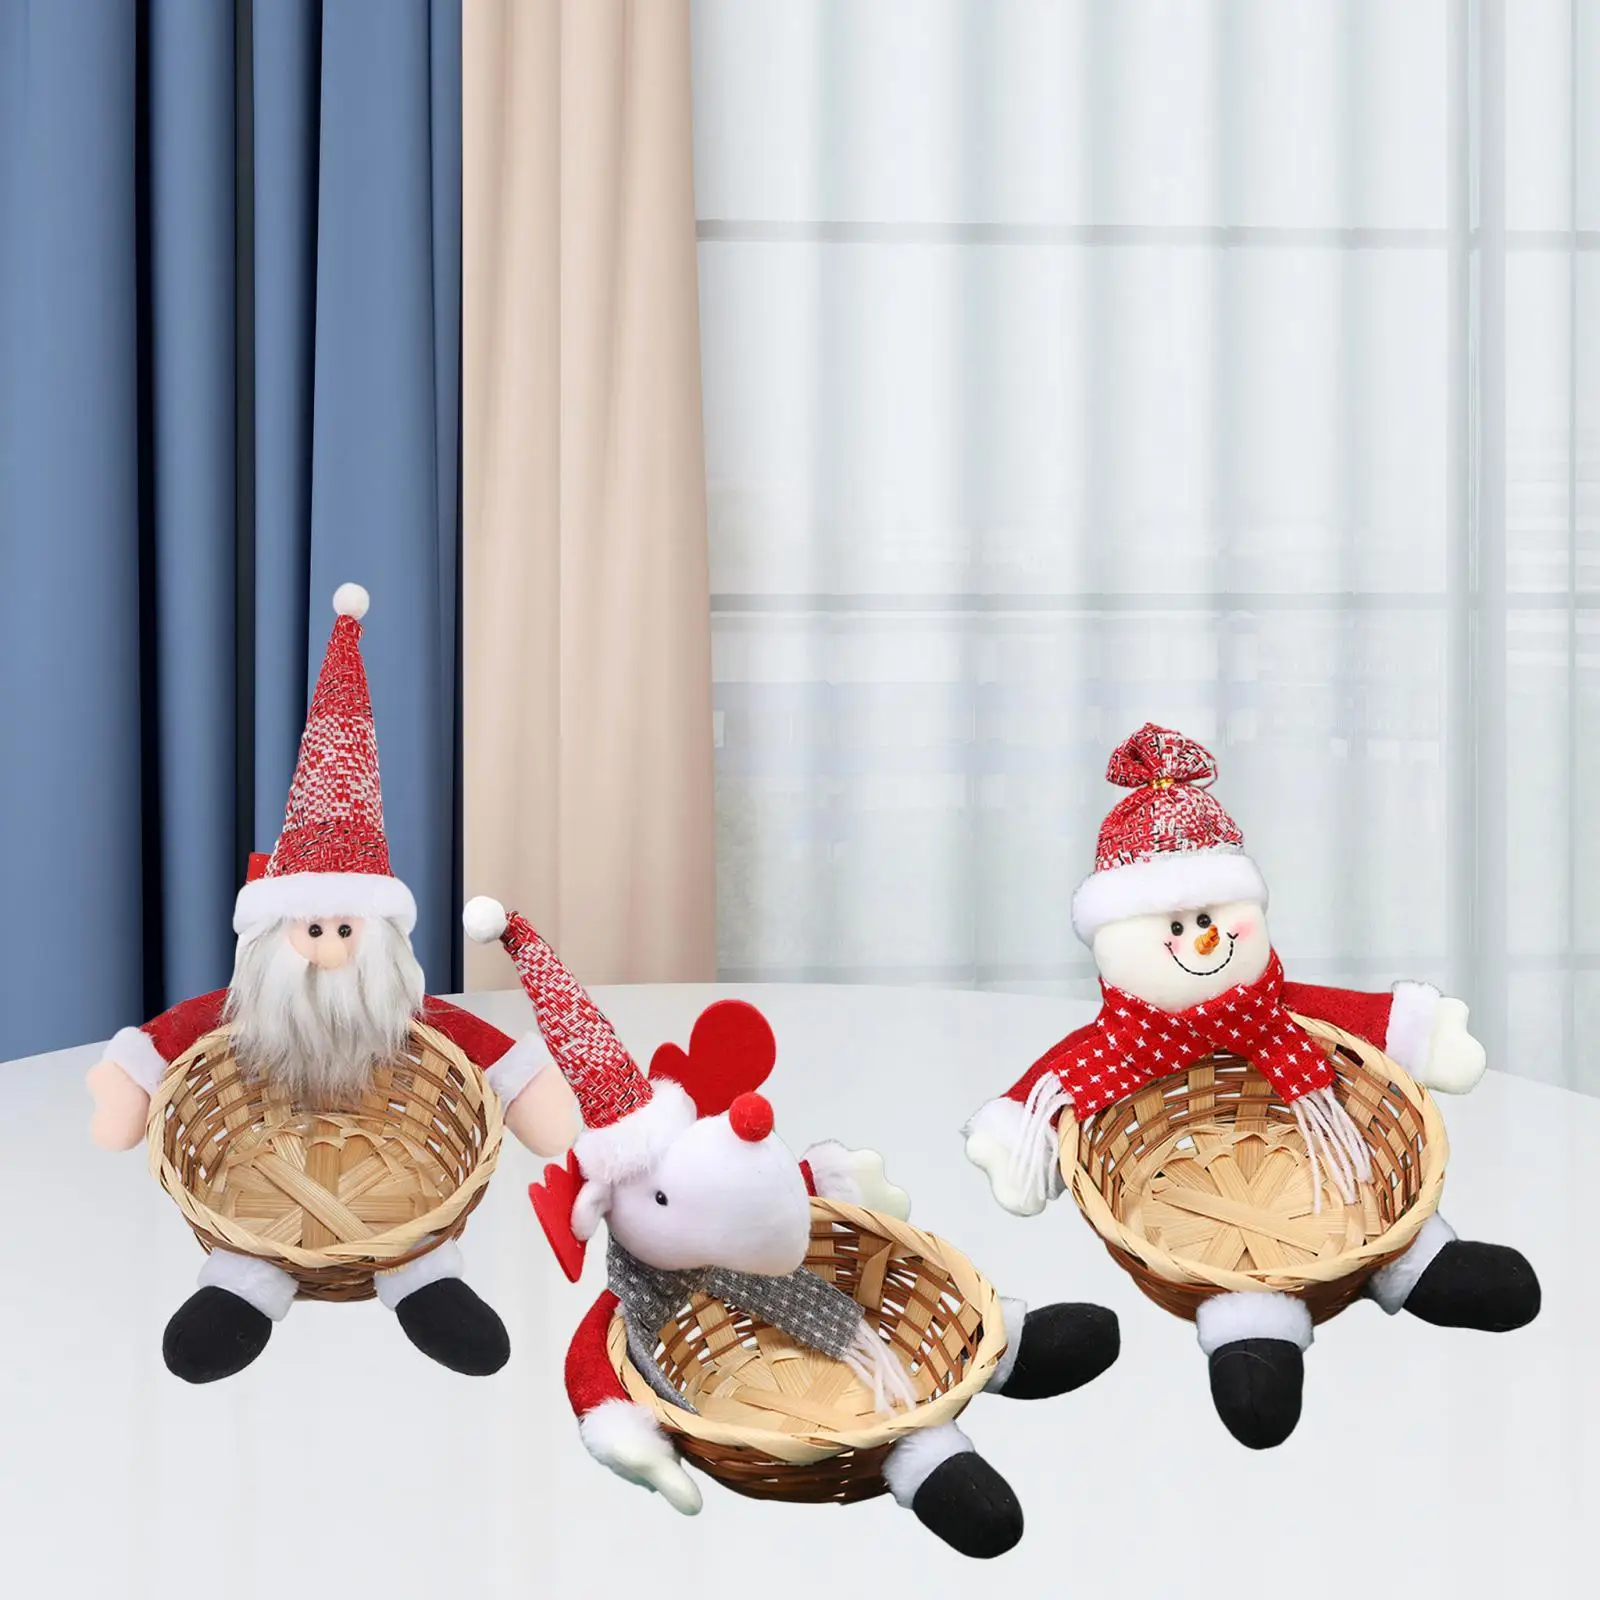 Handwoven Basket Christmas Storage Basket Desktop Ornament Food Candy Basket